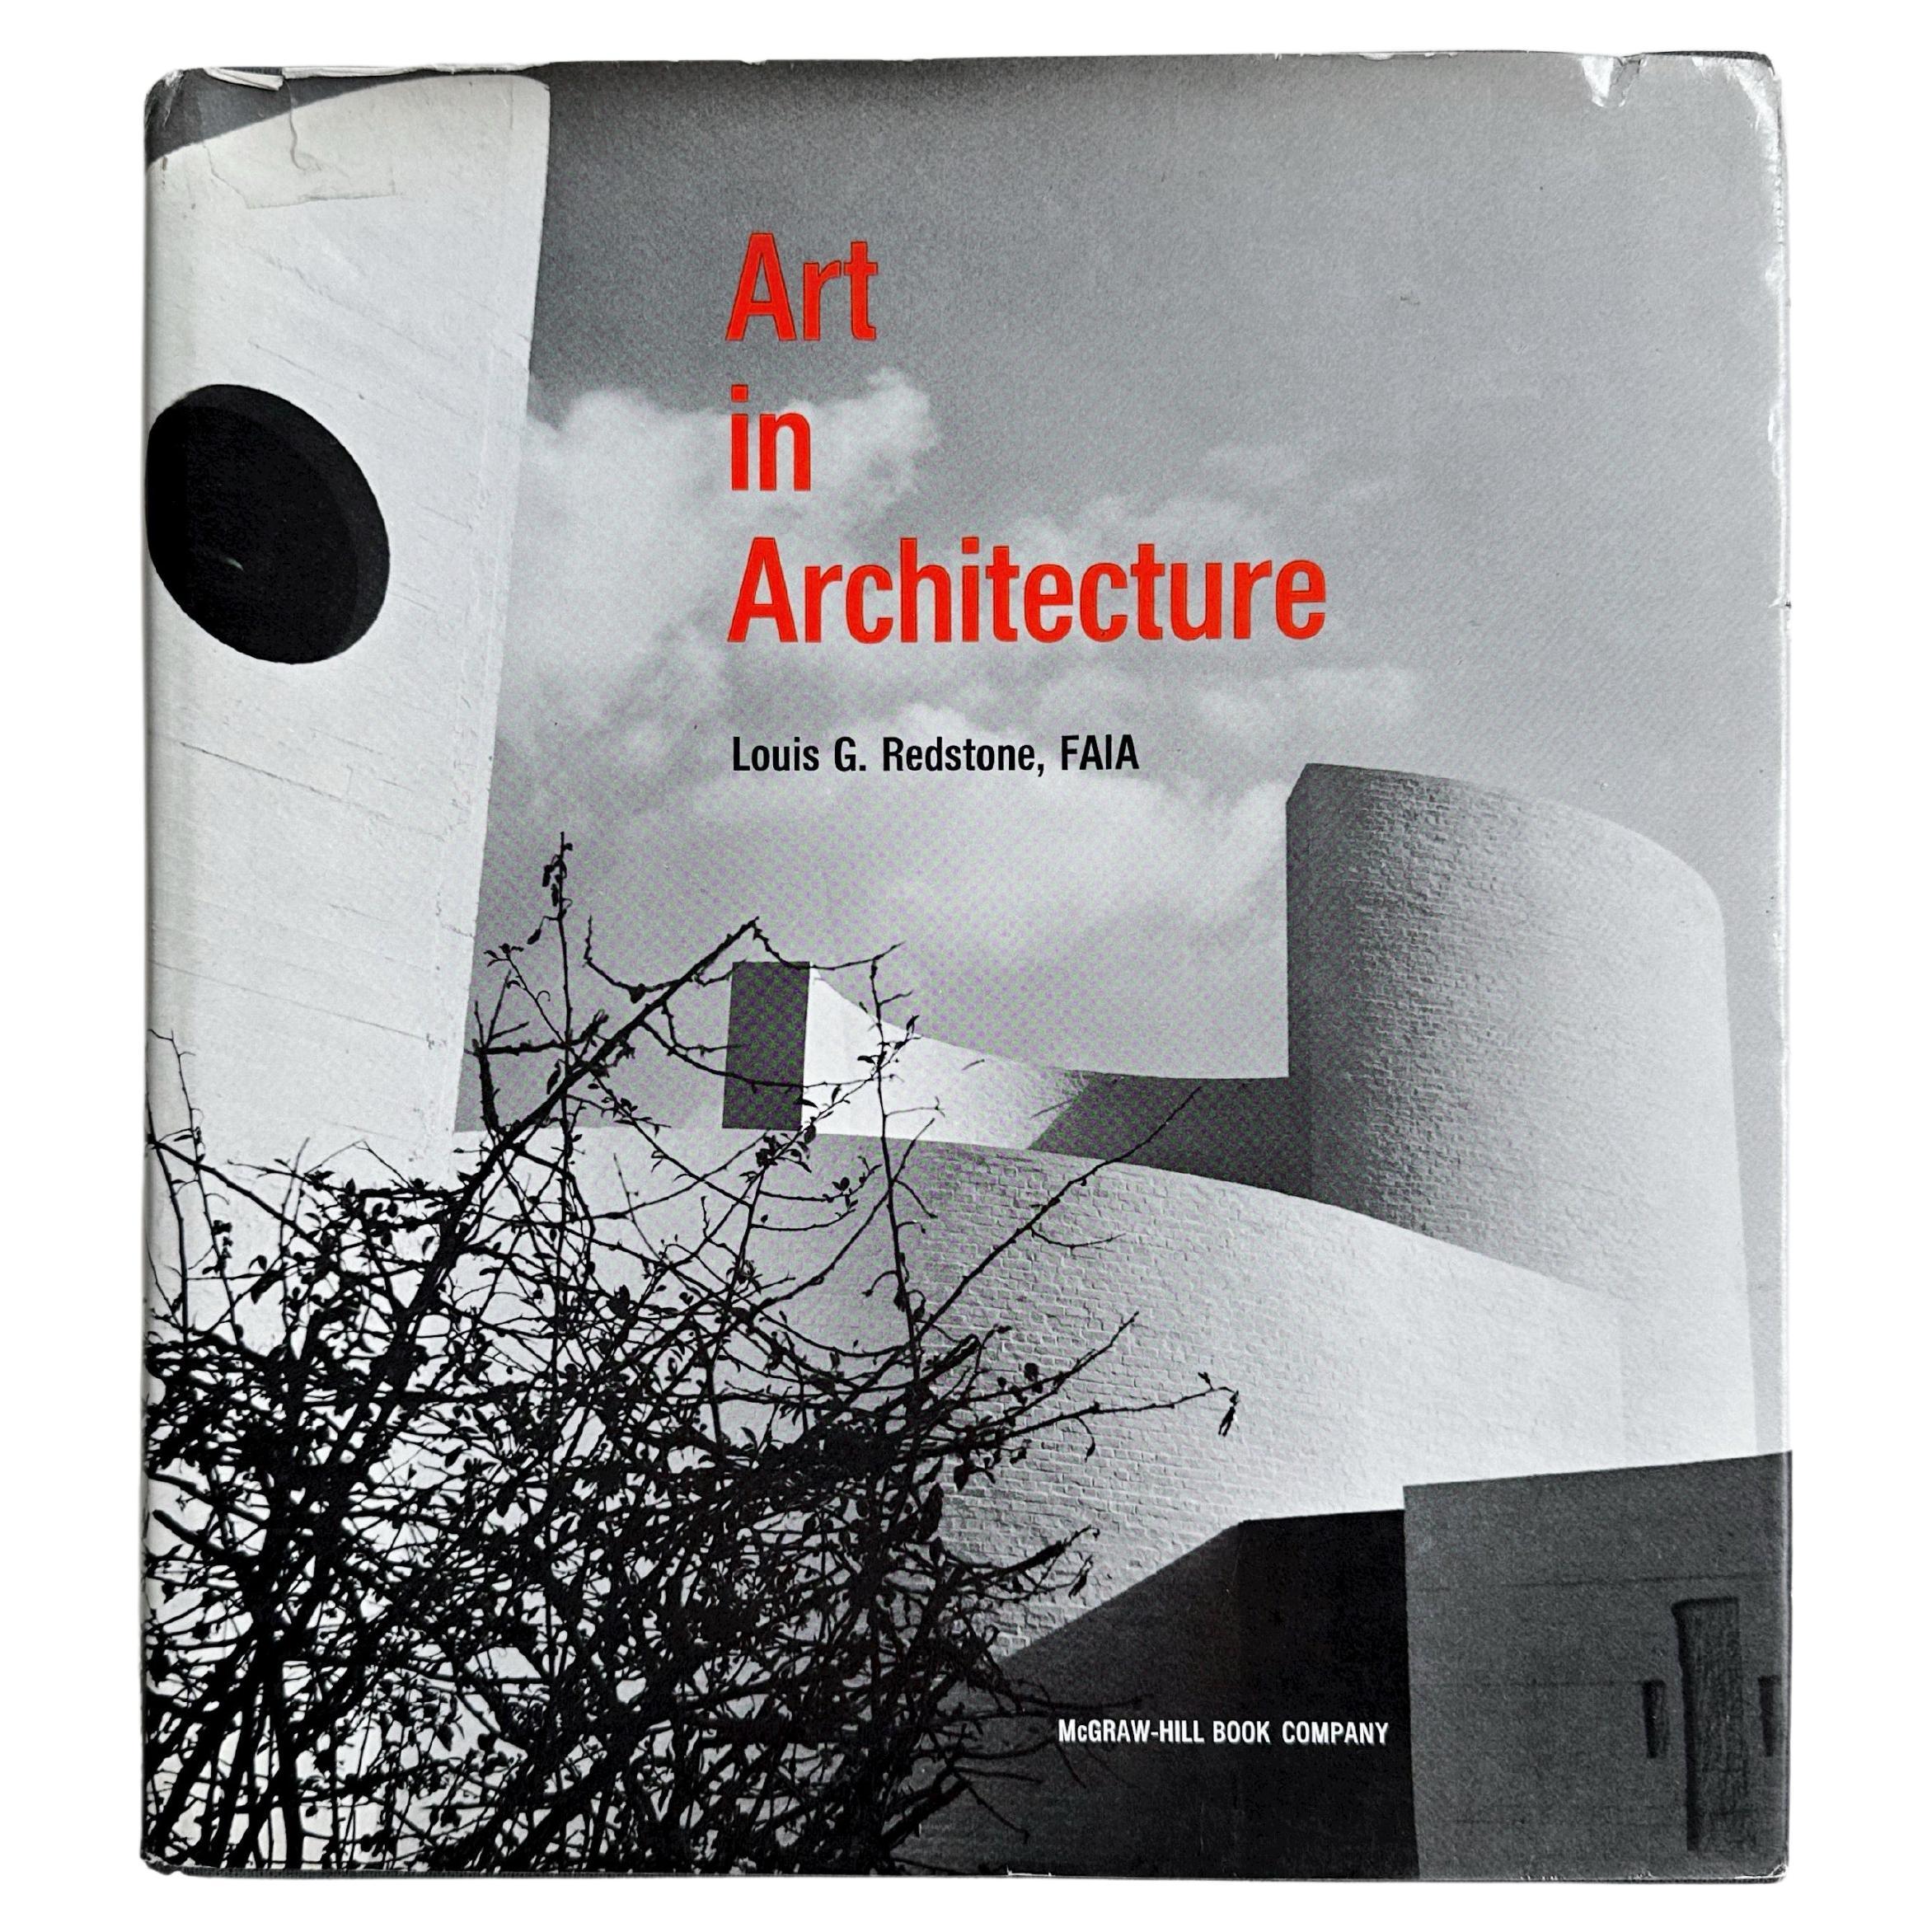 L'art dans l'architecture, Redstone, 1968